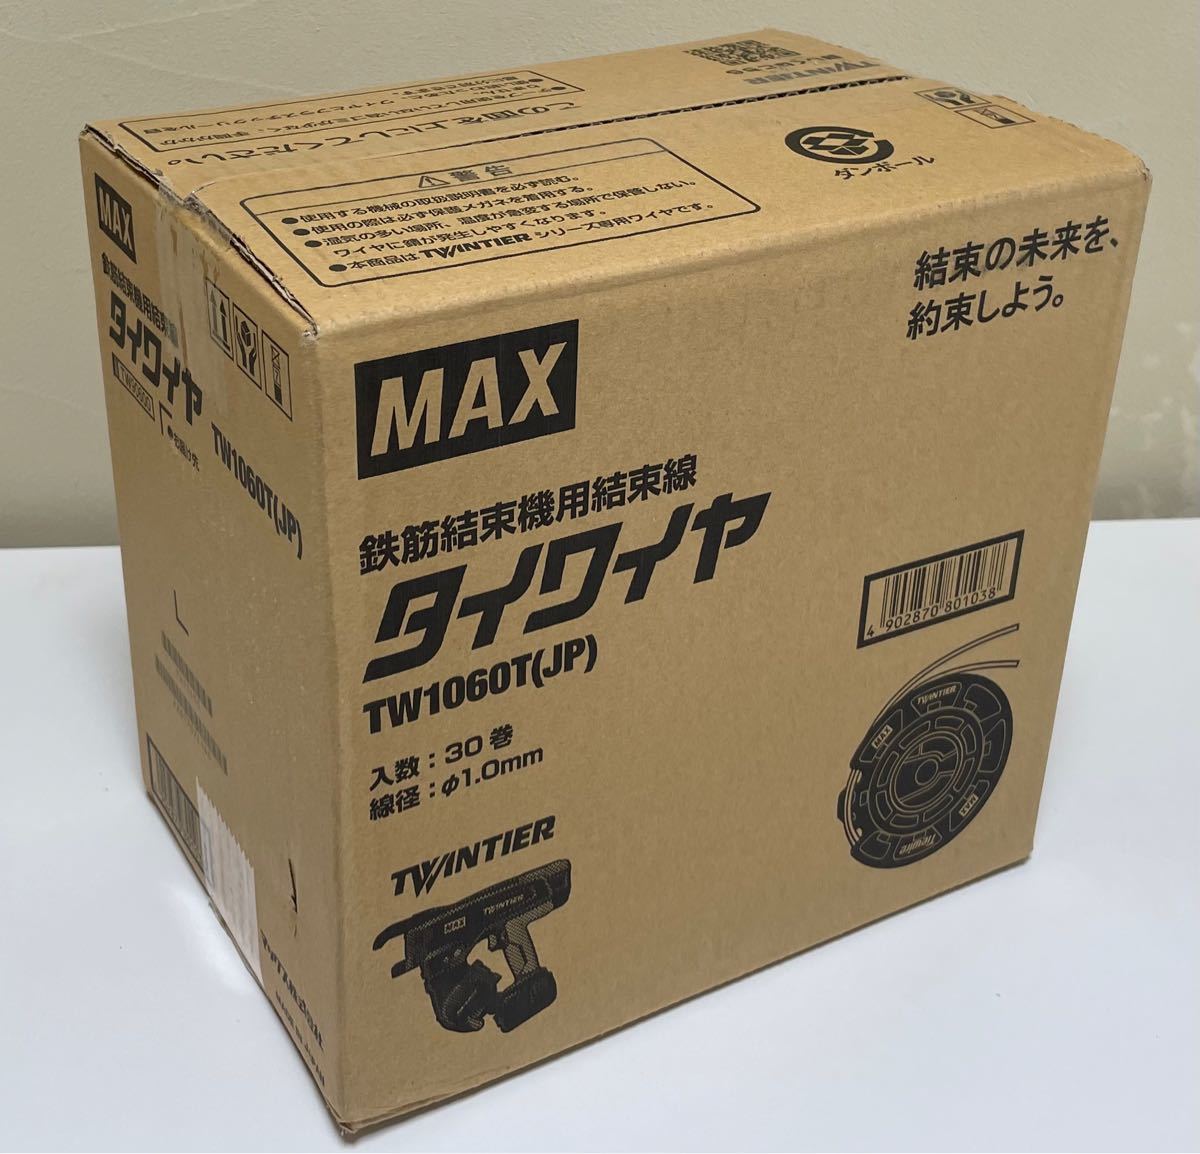 MAX タイワイヤ RB-440T用 なまし鉄線 30巻入 TW1060T(JP) お取り寄せ品 4902870801038 通販 